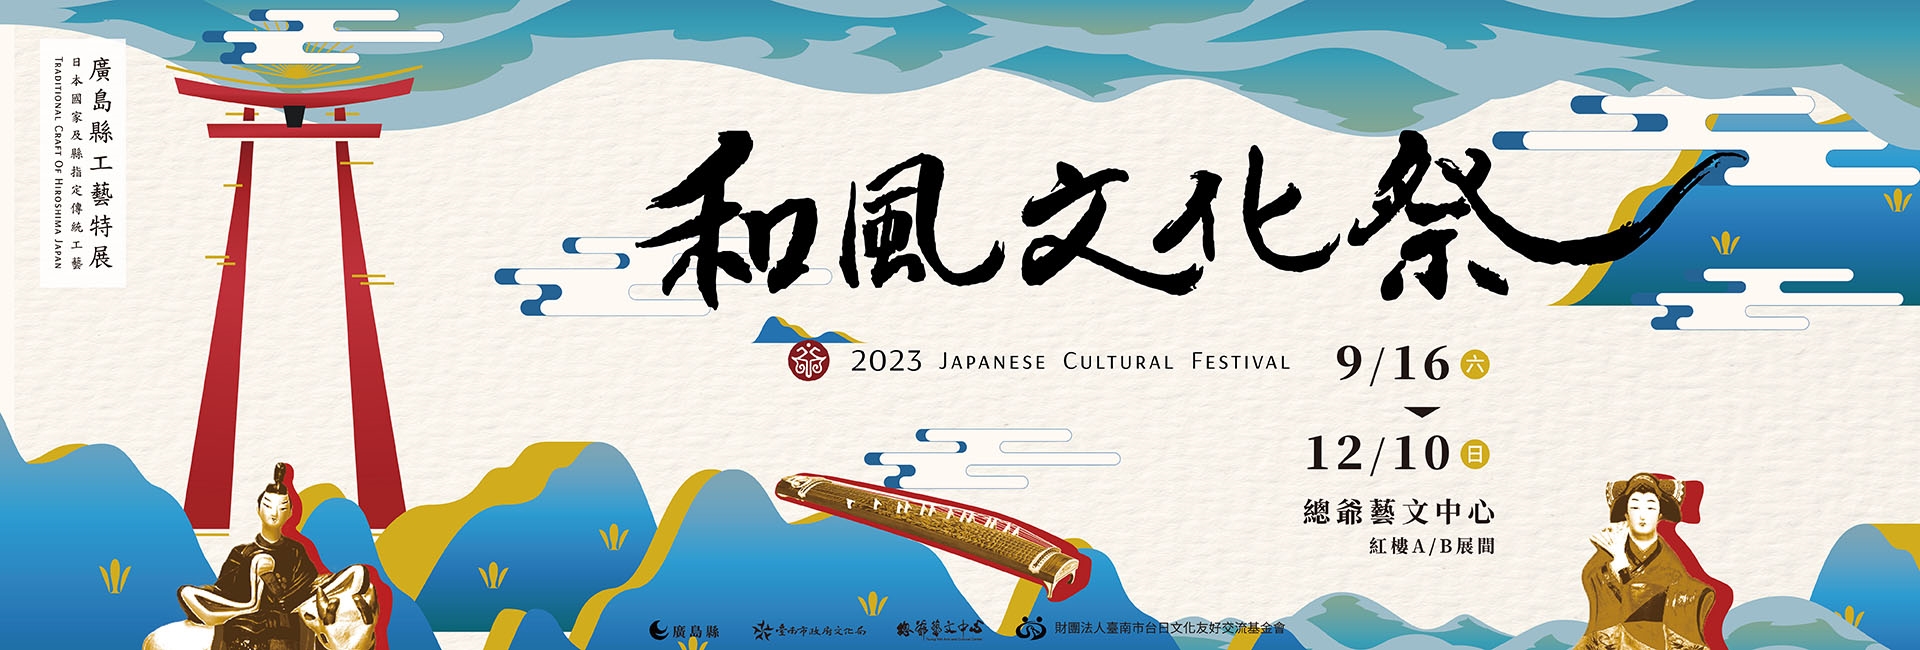 2023總爺和風文化祭